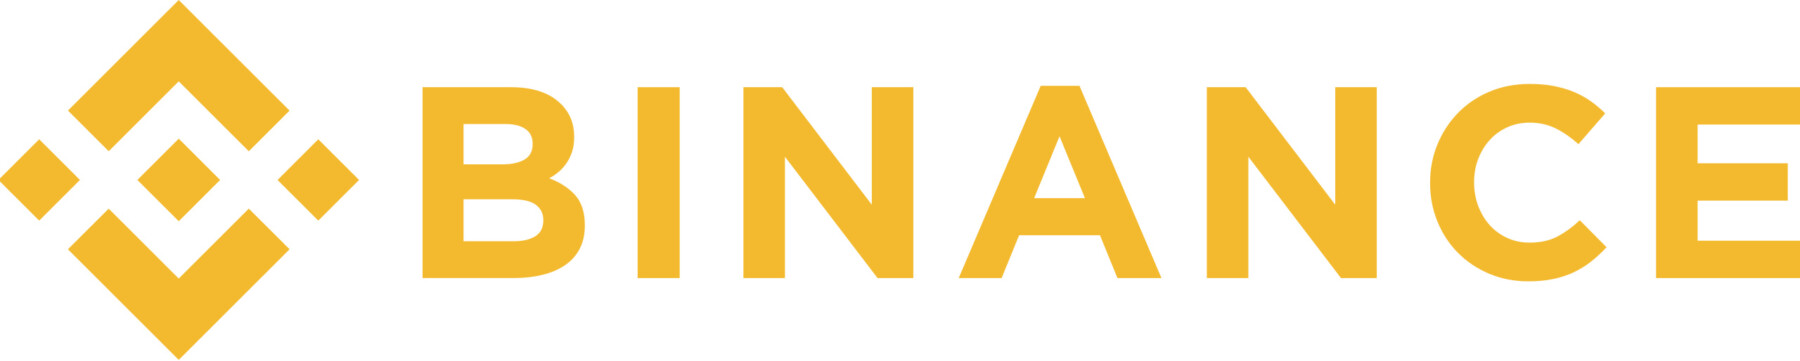 binance logo Gelb auf weißen Hintergrund